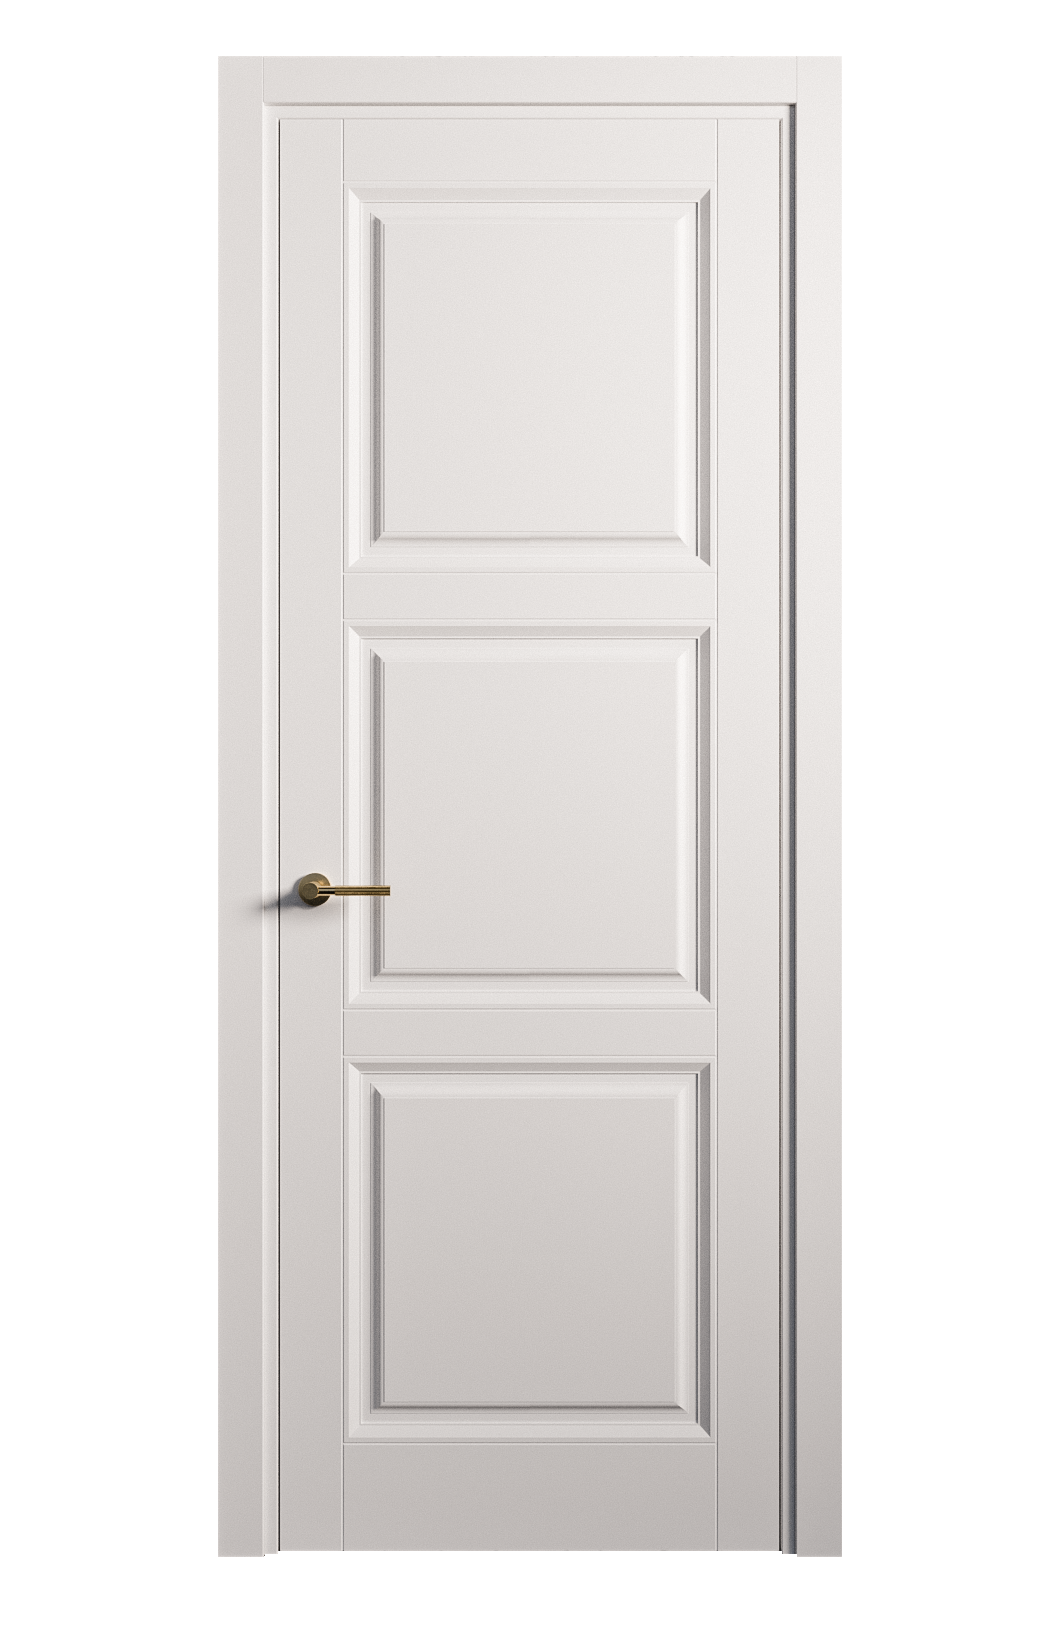 Межкомнатная дверь Venezia-3 глухая эмаль ral 9003 25733